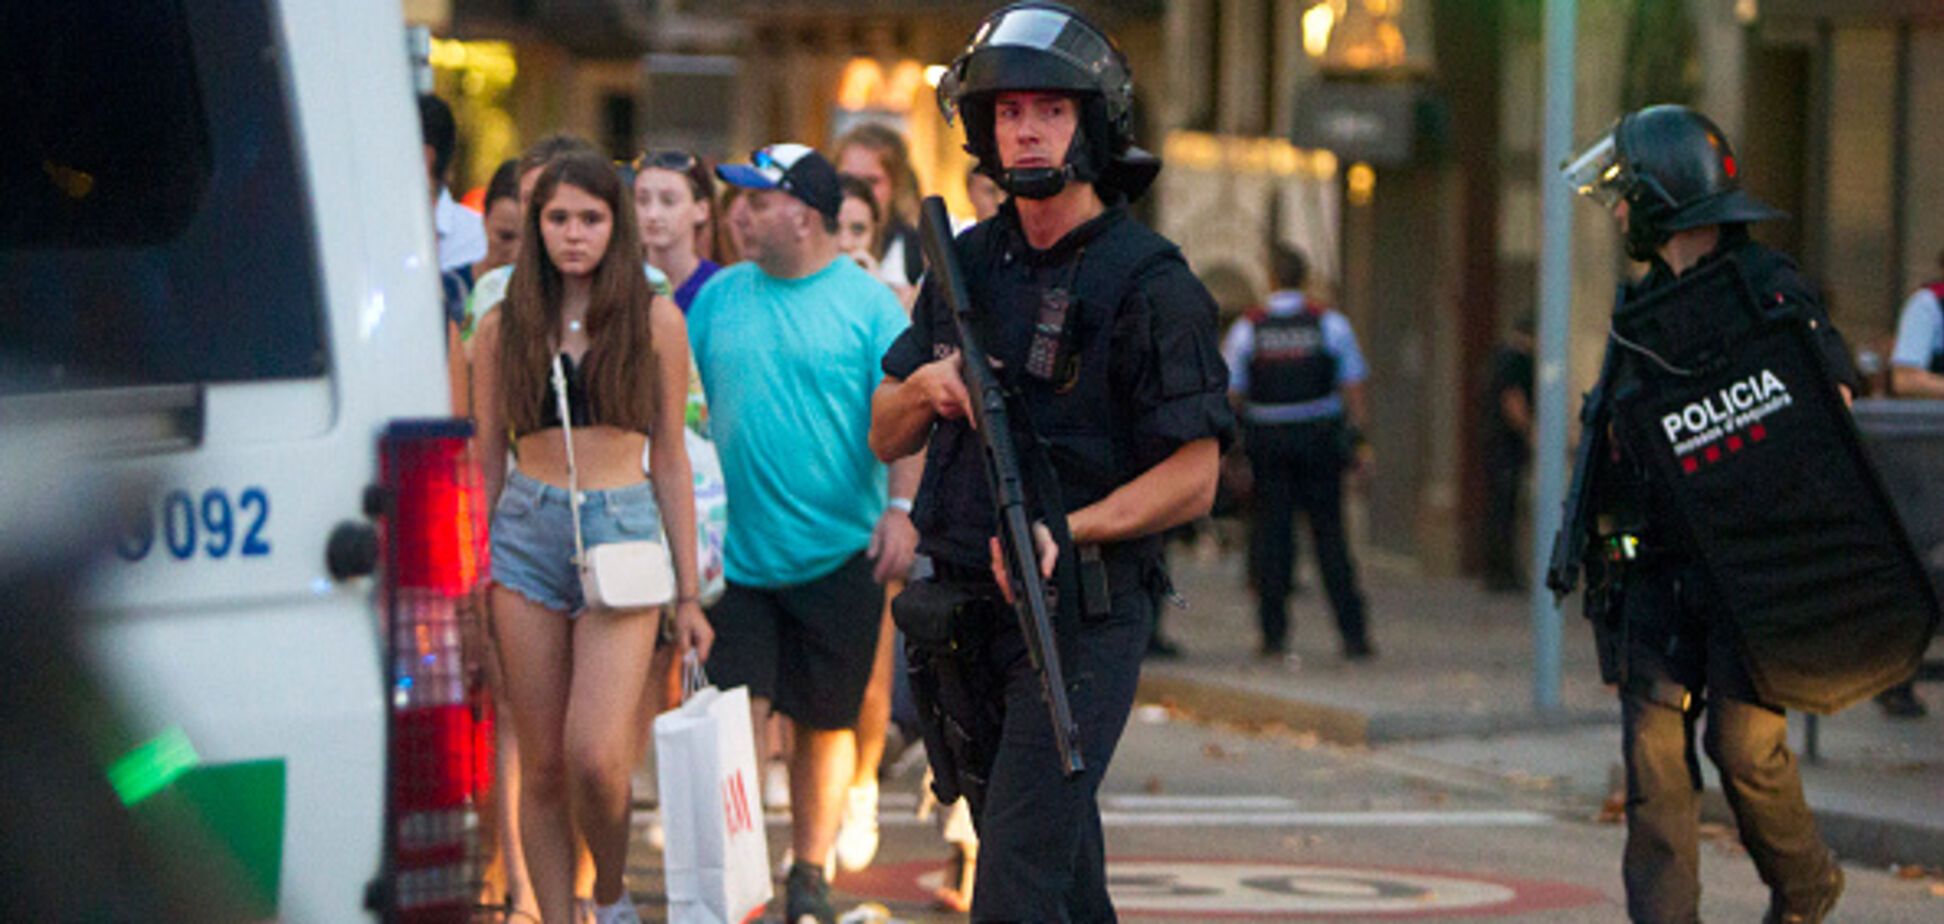 Теракт в Барселоне: полиция нашла у нападавших взрывчатку 'мать Сатаны'